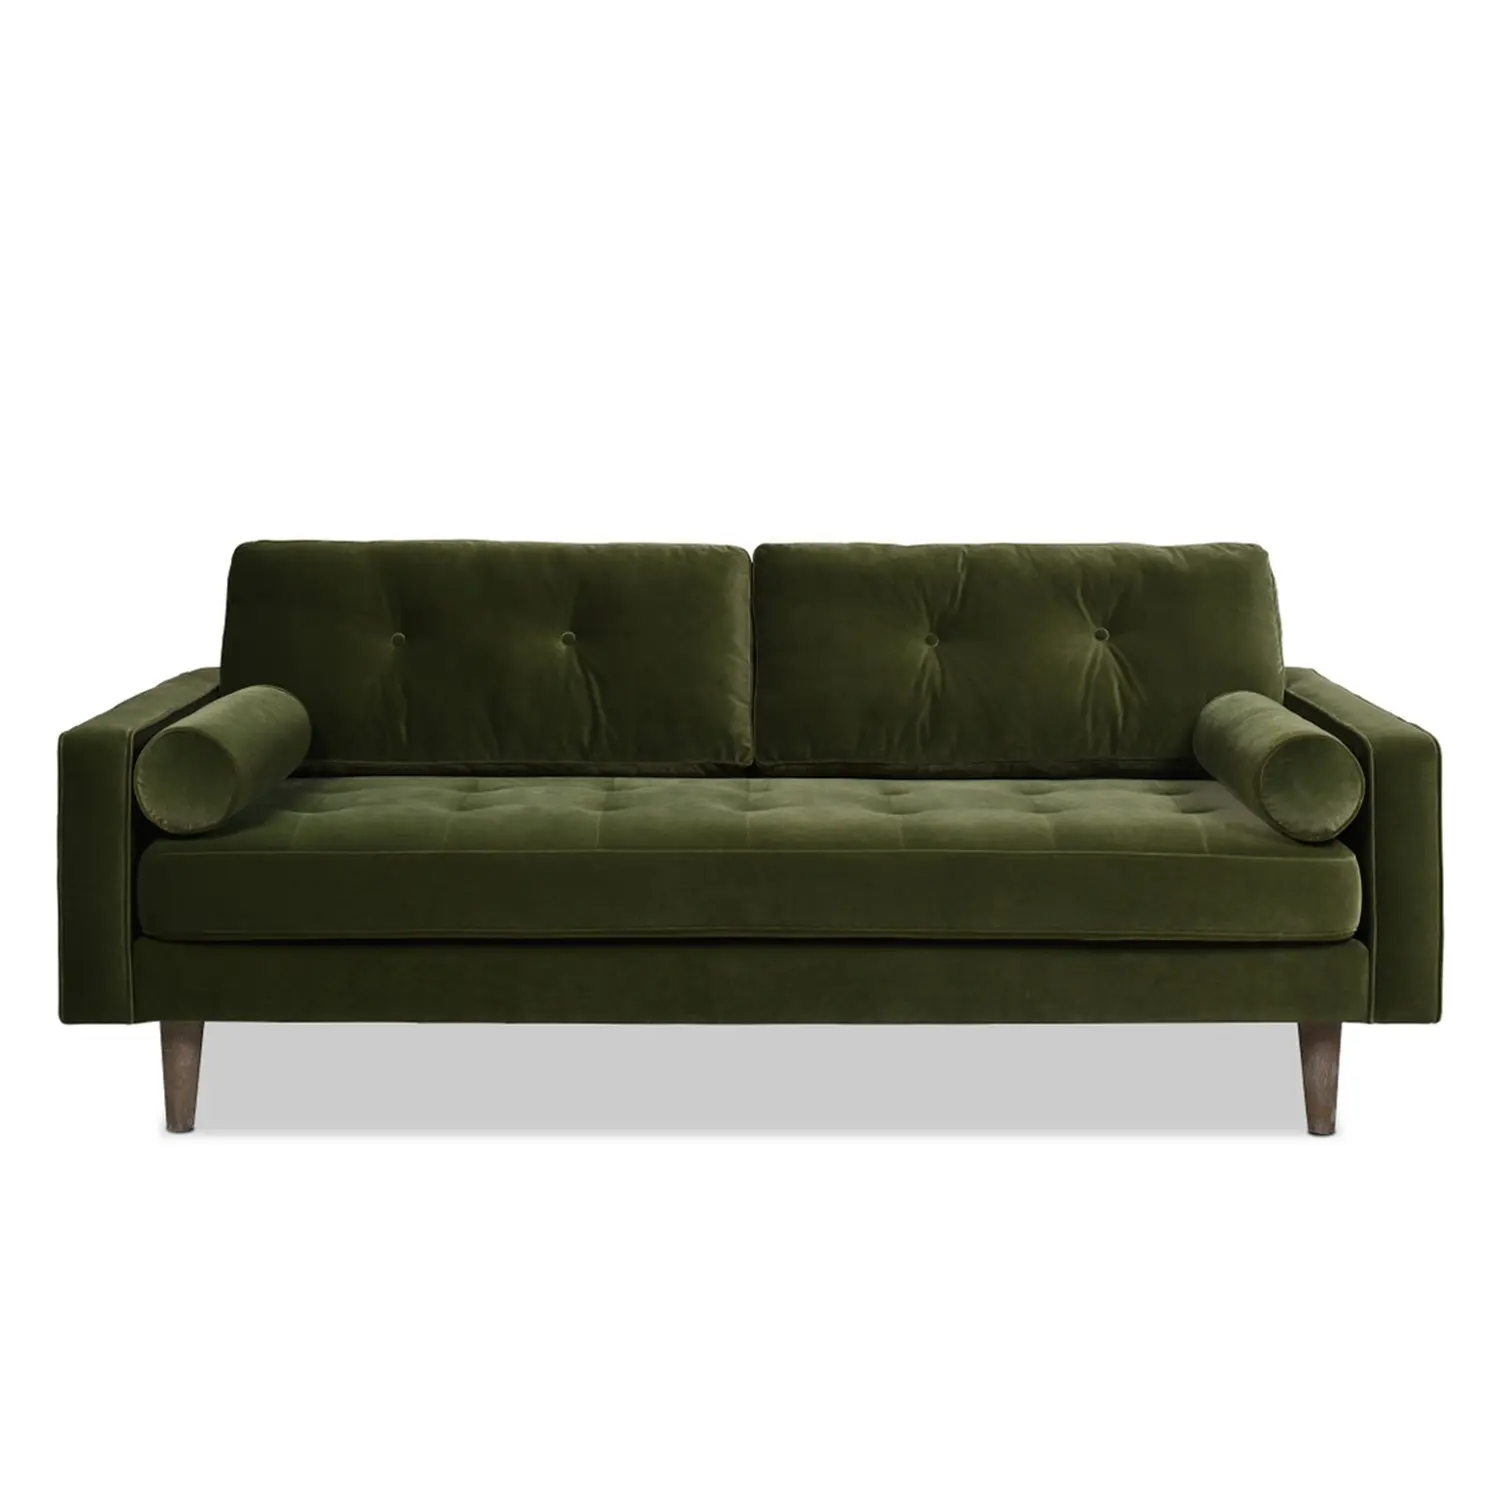 Canapé de salon design moderne avec cadre en bois minimaliste canapé de salon carré en tissu de velours vert avec siège en peluche